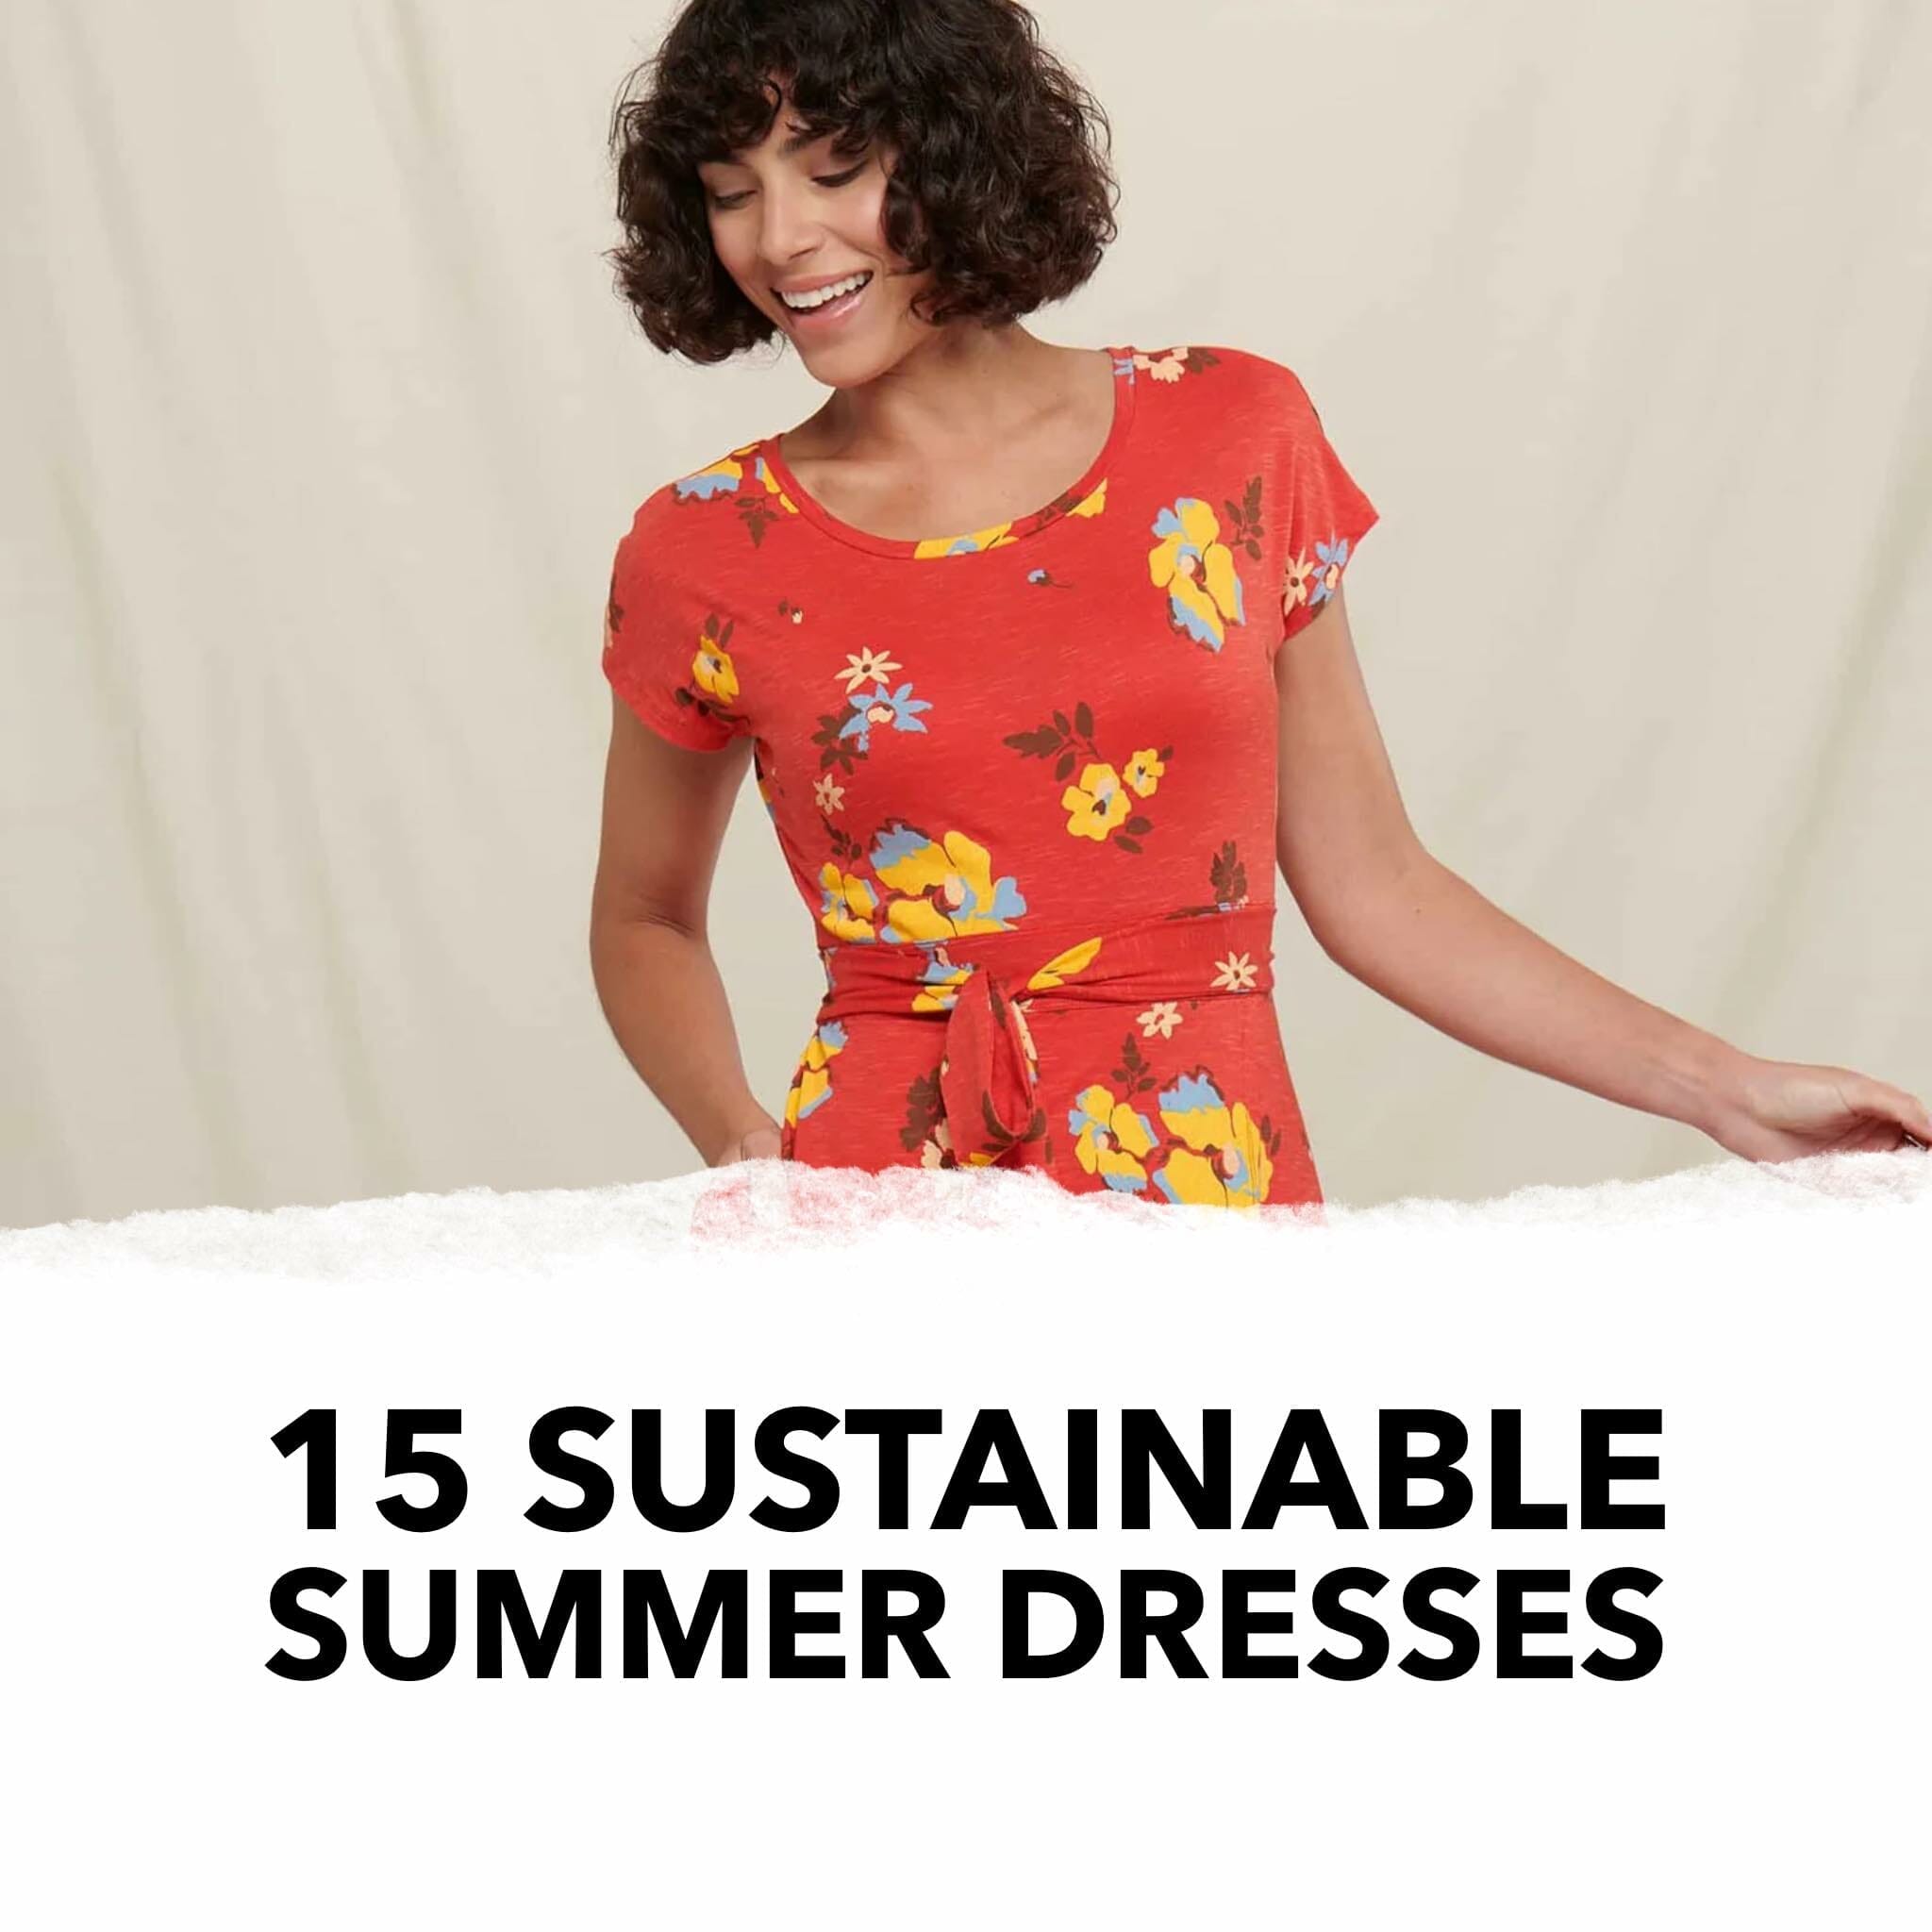 Sustainable and Ethical Clothing – Paloma Clothing